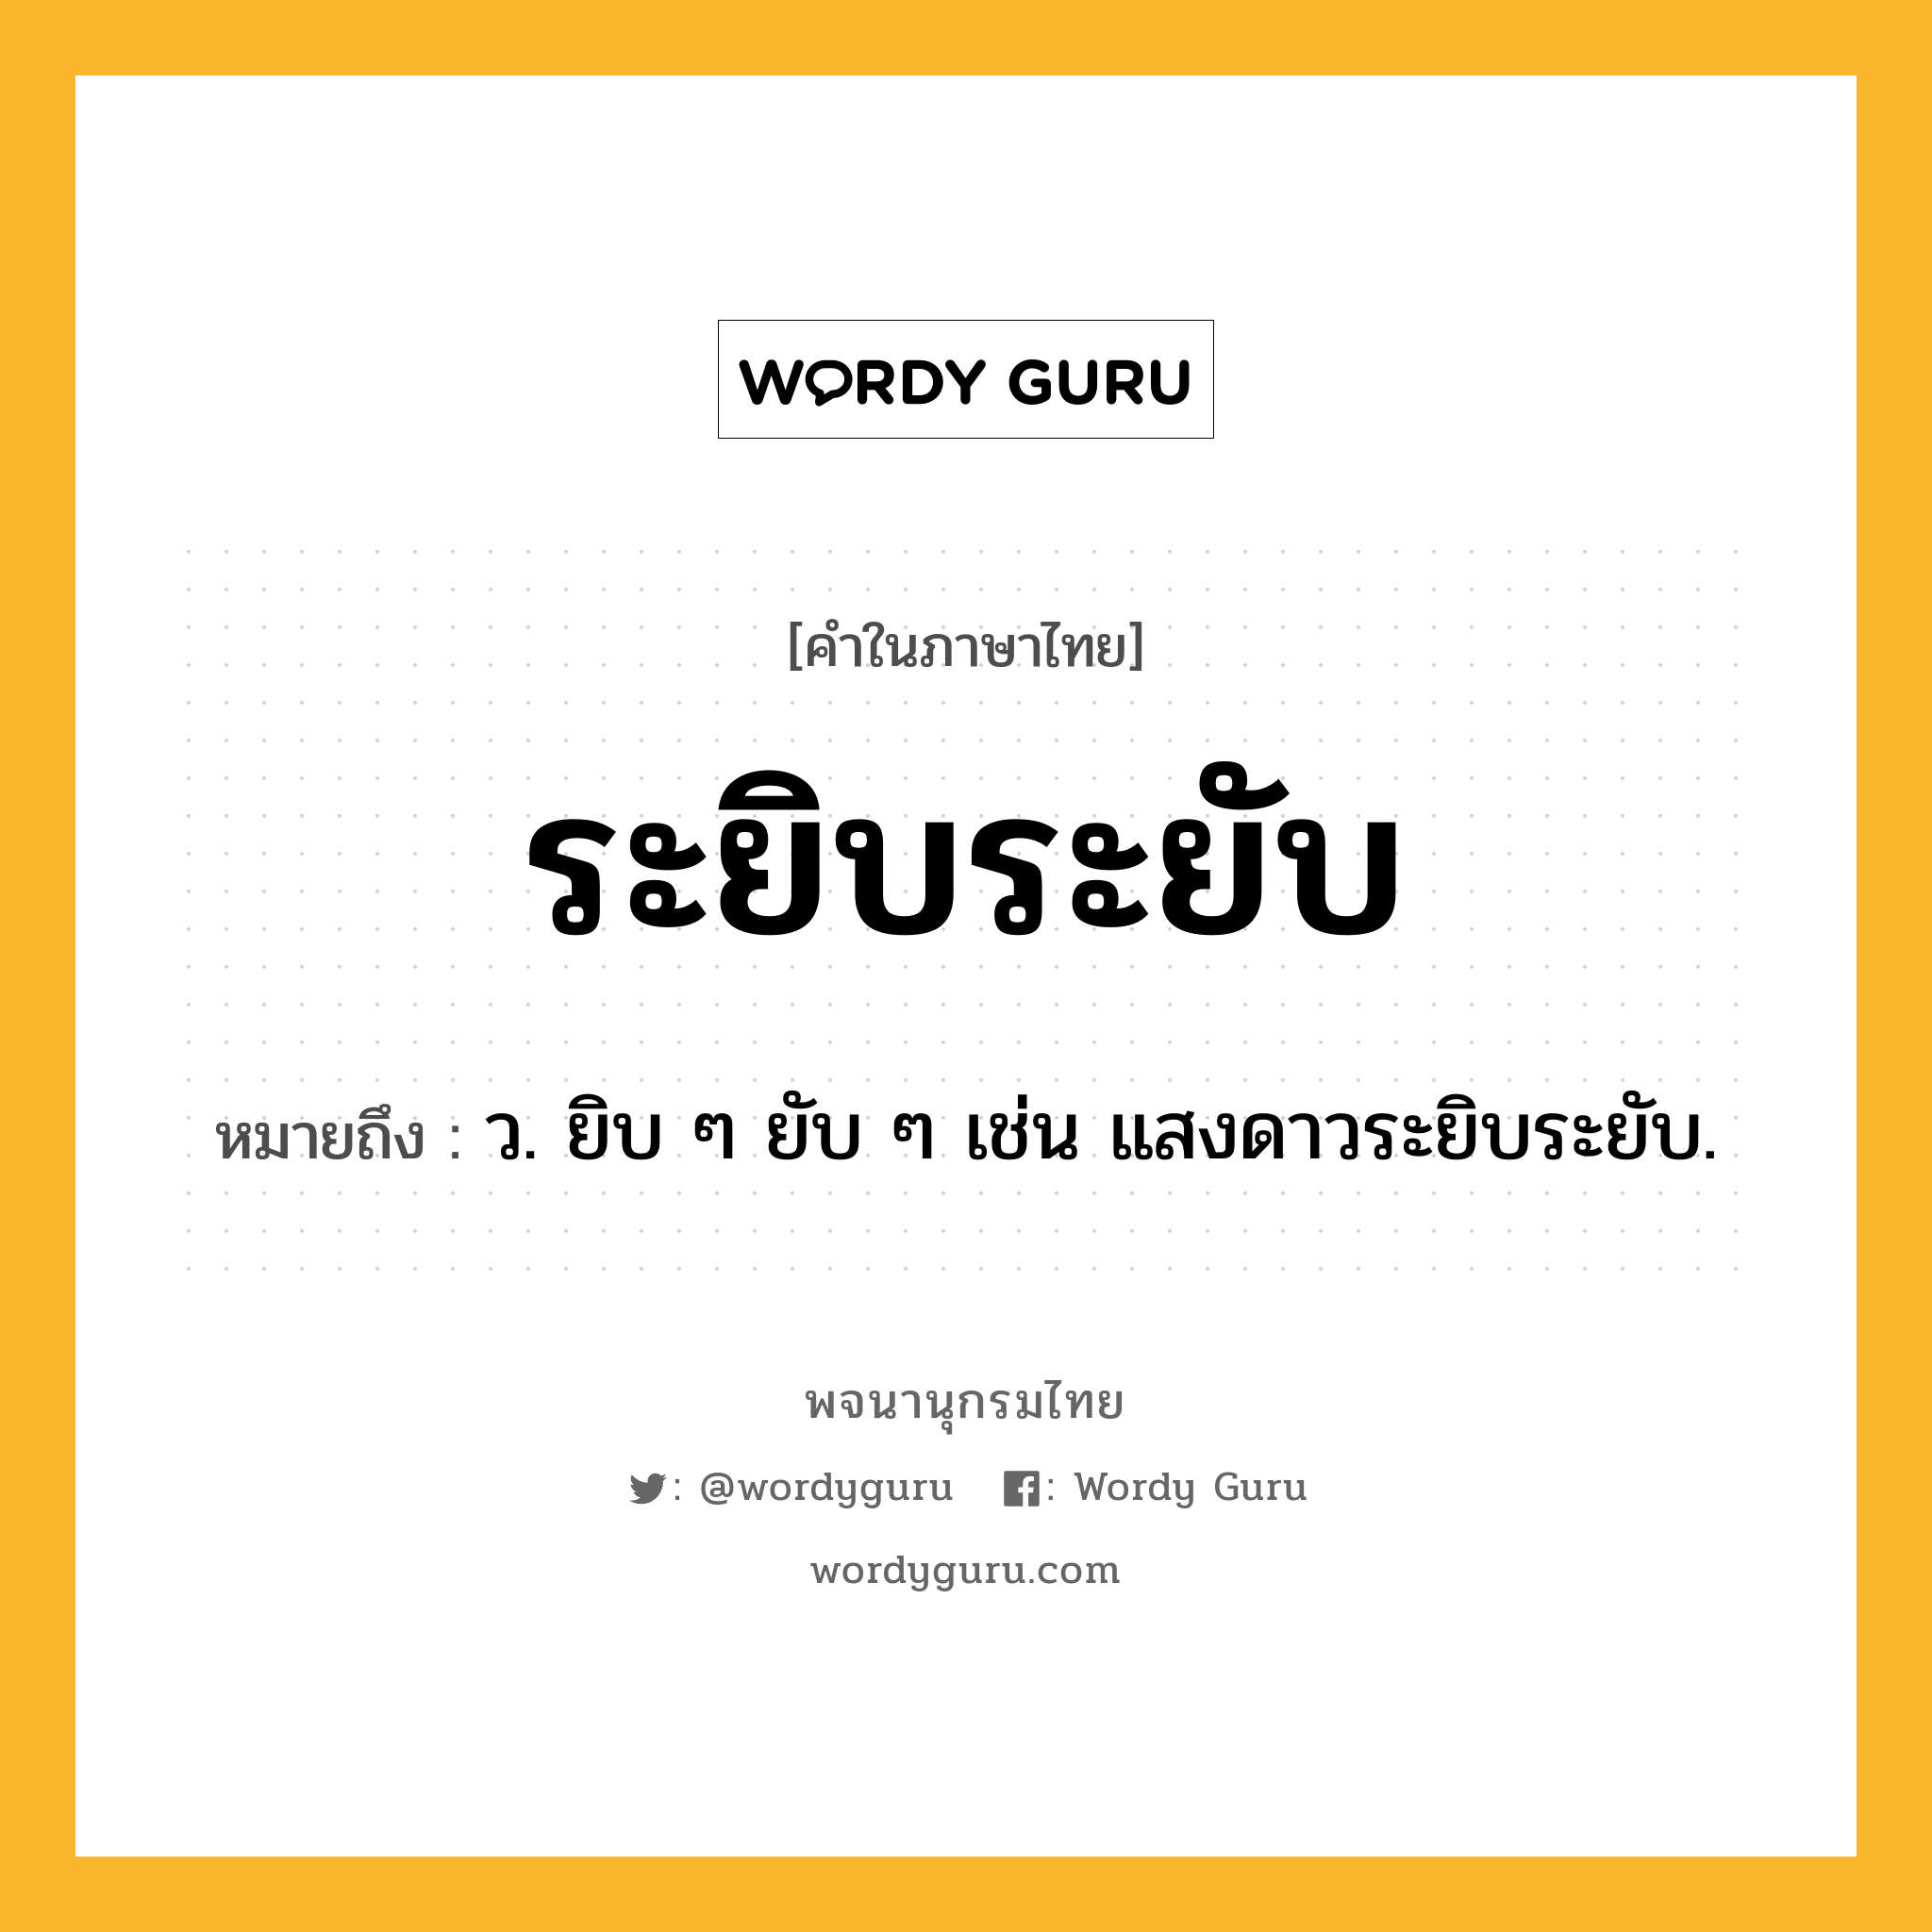 ระยิบระยับ หมายถึงอะไร?, คำในภาษาไทย ระยิบระยับ หมายถึง ว. ยิบ ๆ ยับ ๆ เช่น แสงดาวระยิบระยับ.